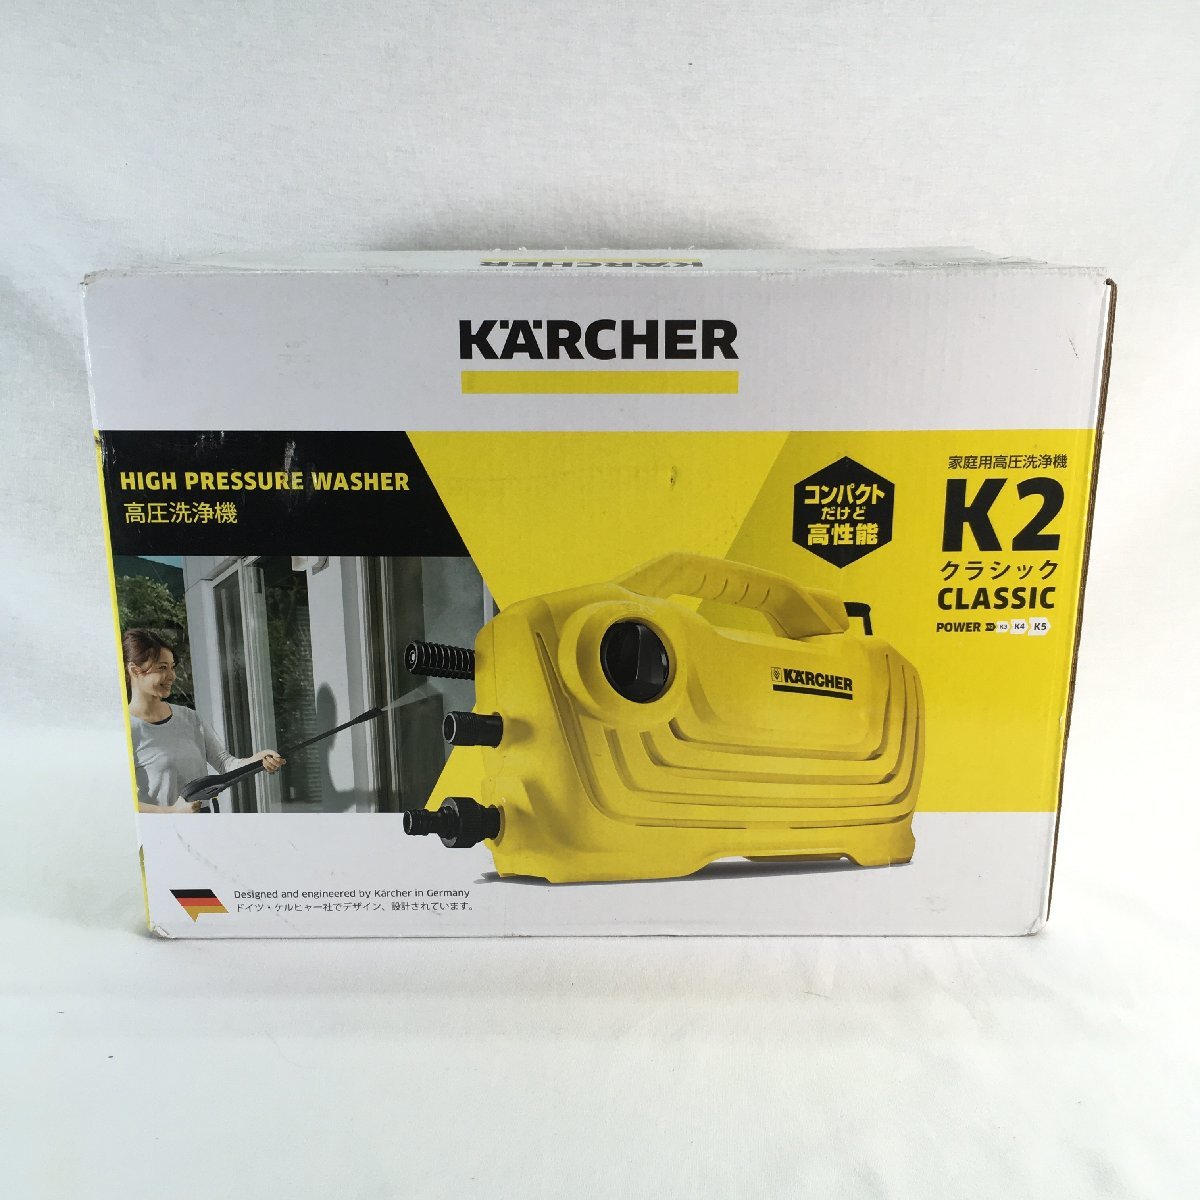 有名なブランド 『未使用品』KARCHER ケルヒャー 高圧洗浄器 K2